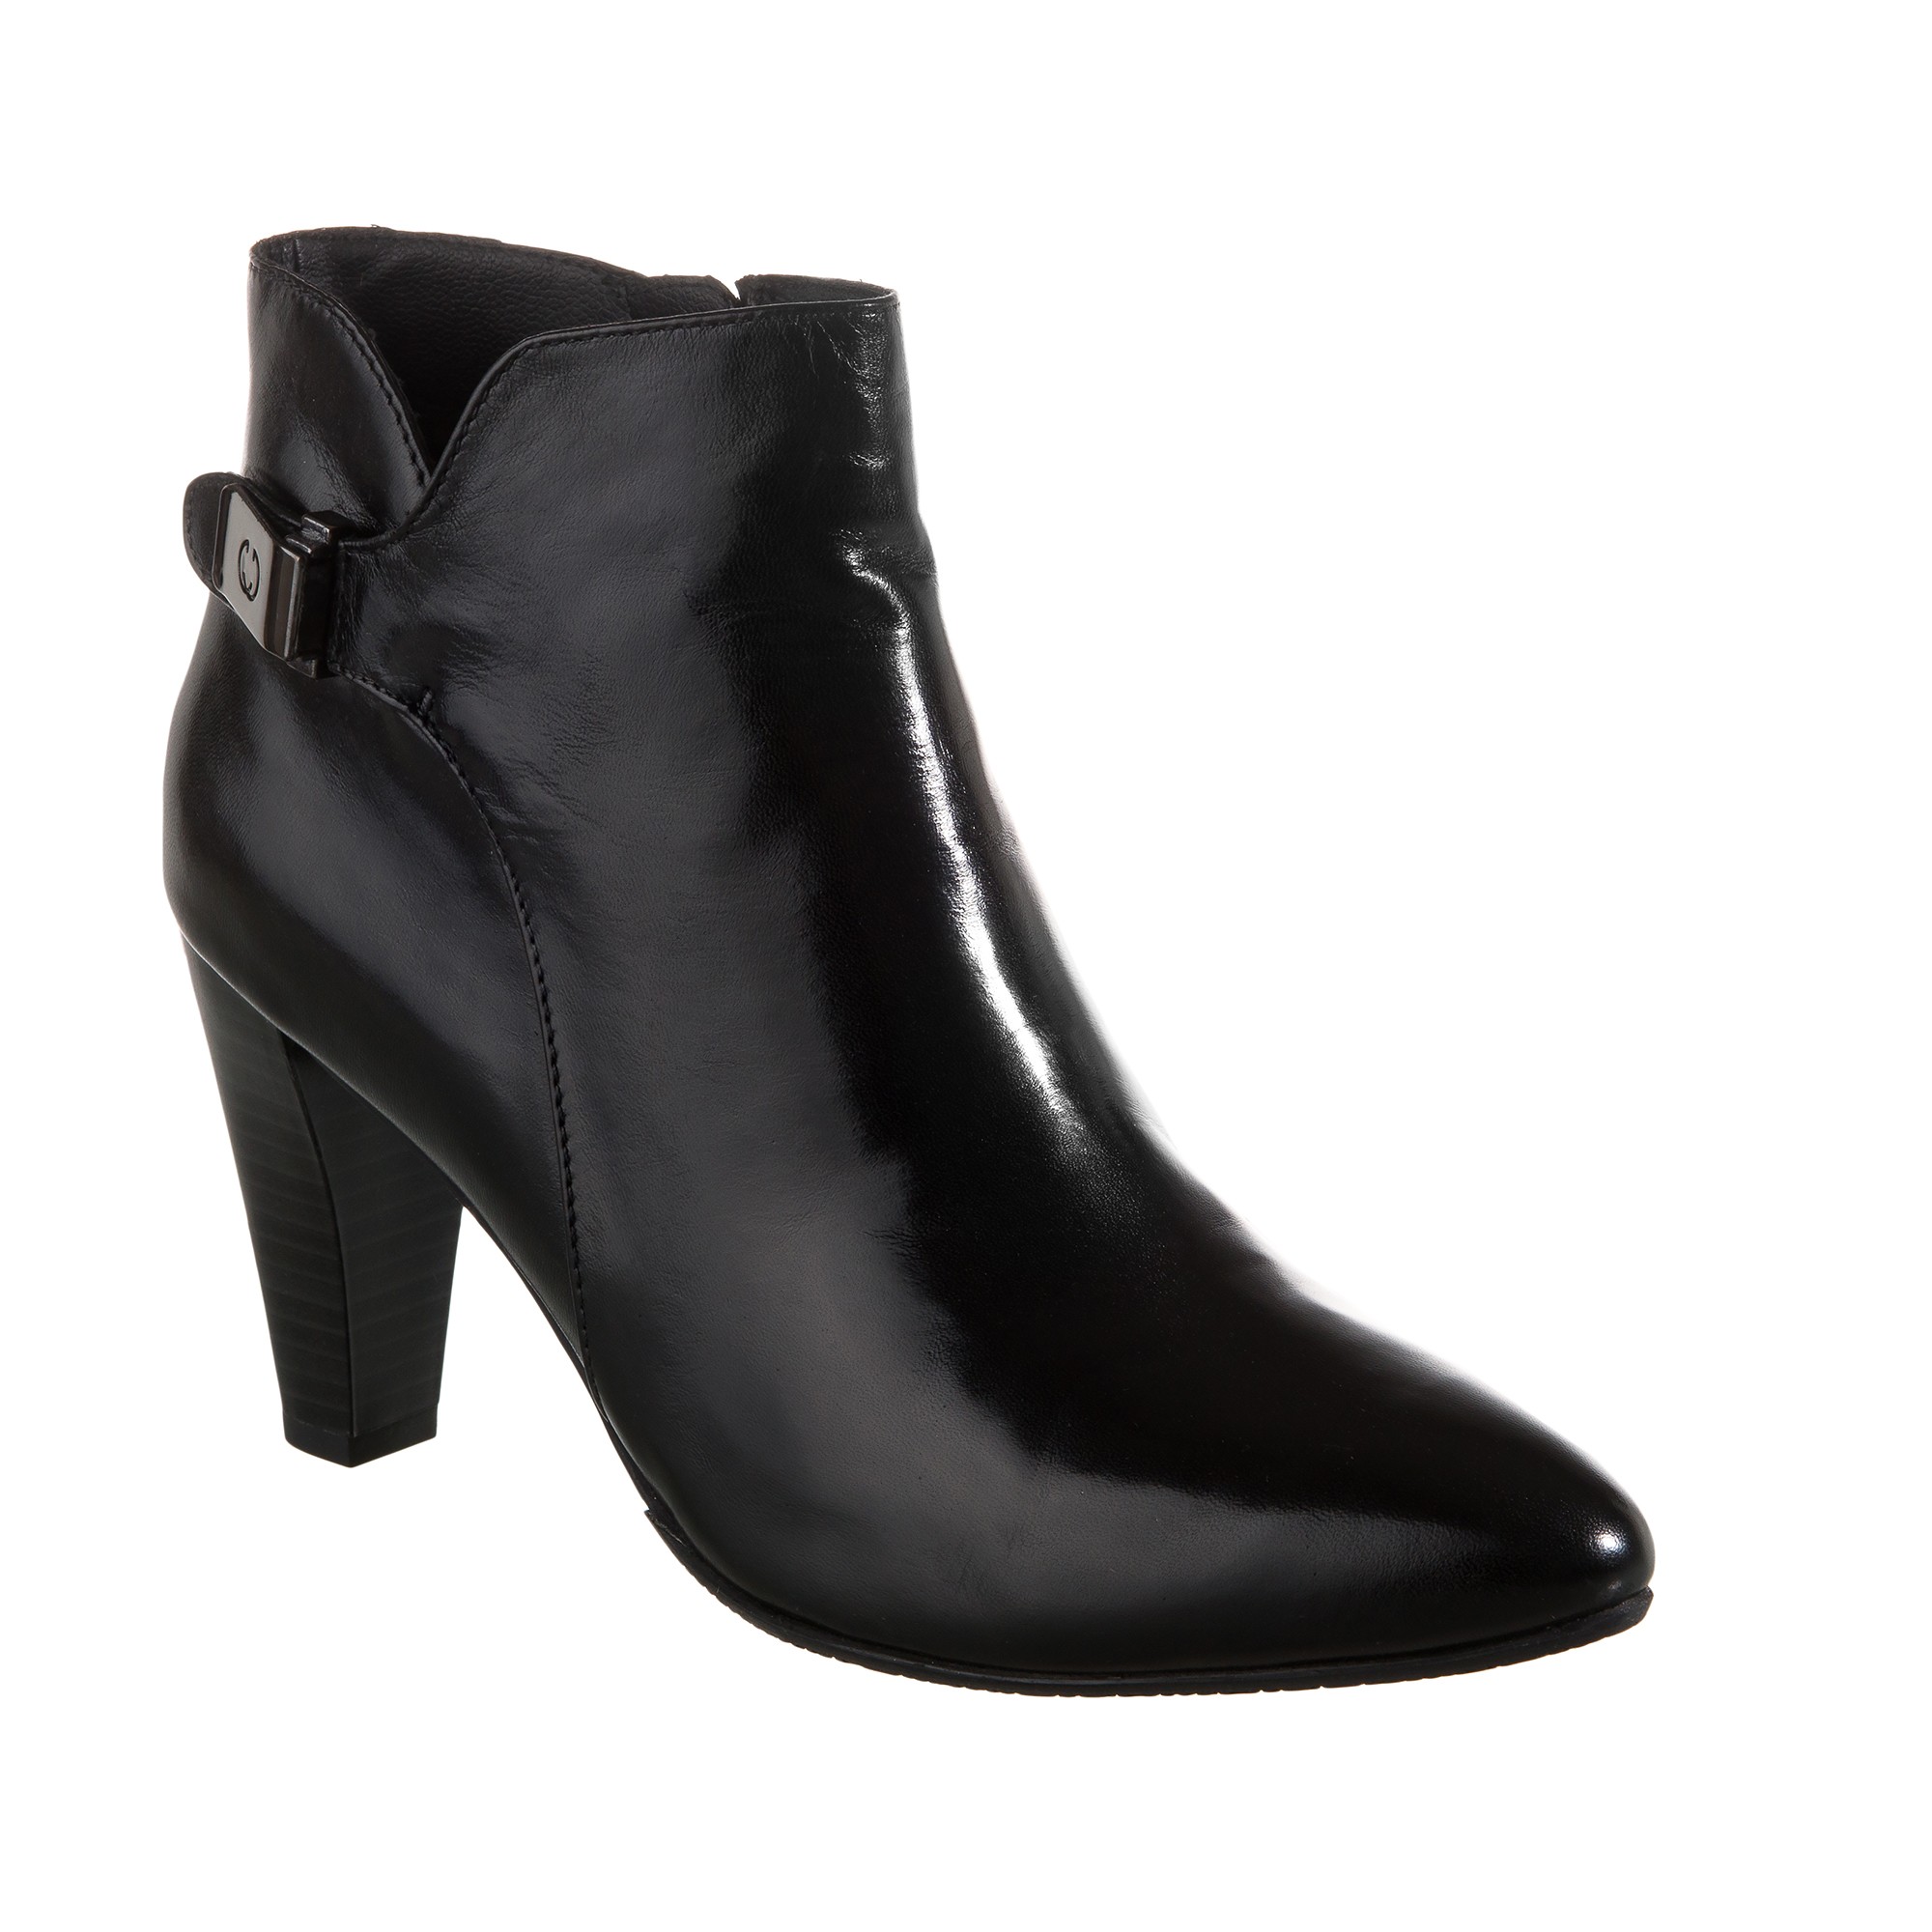 Josefine 10 (fekete) / Josef Seibel - cipő webáruház, webshop